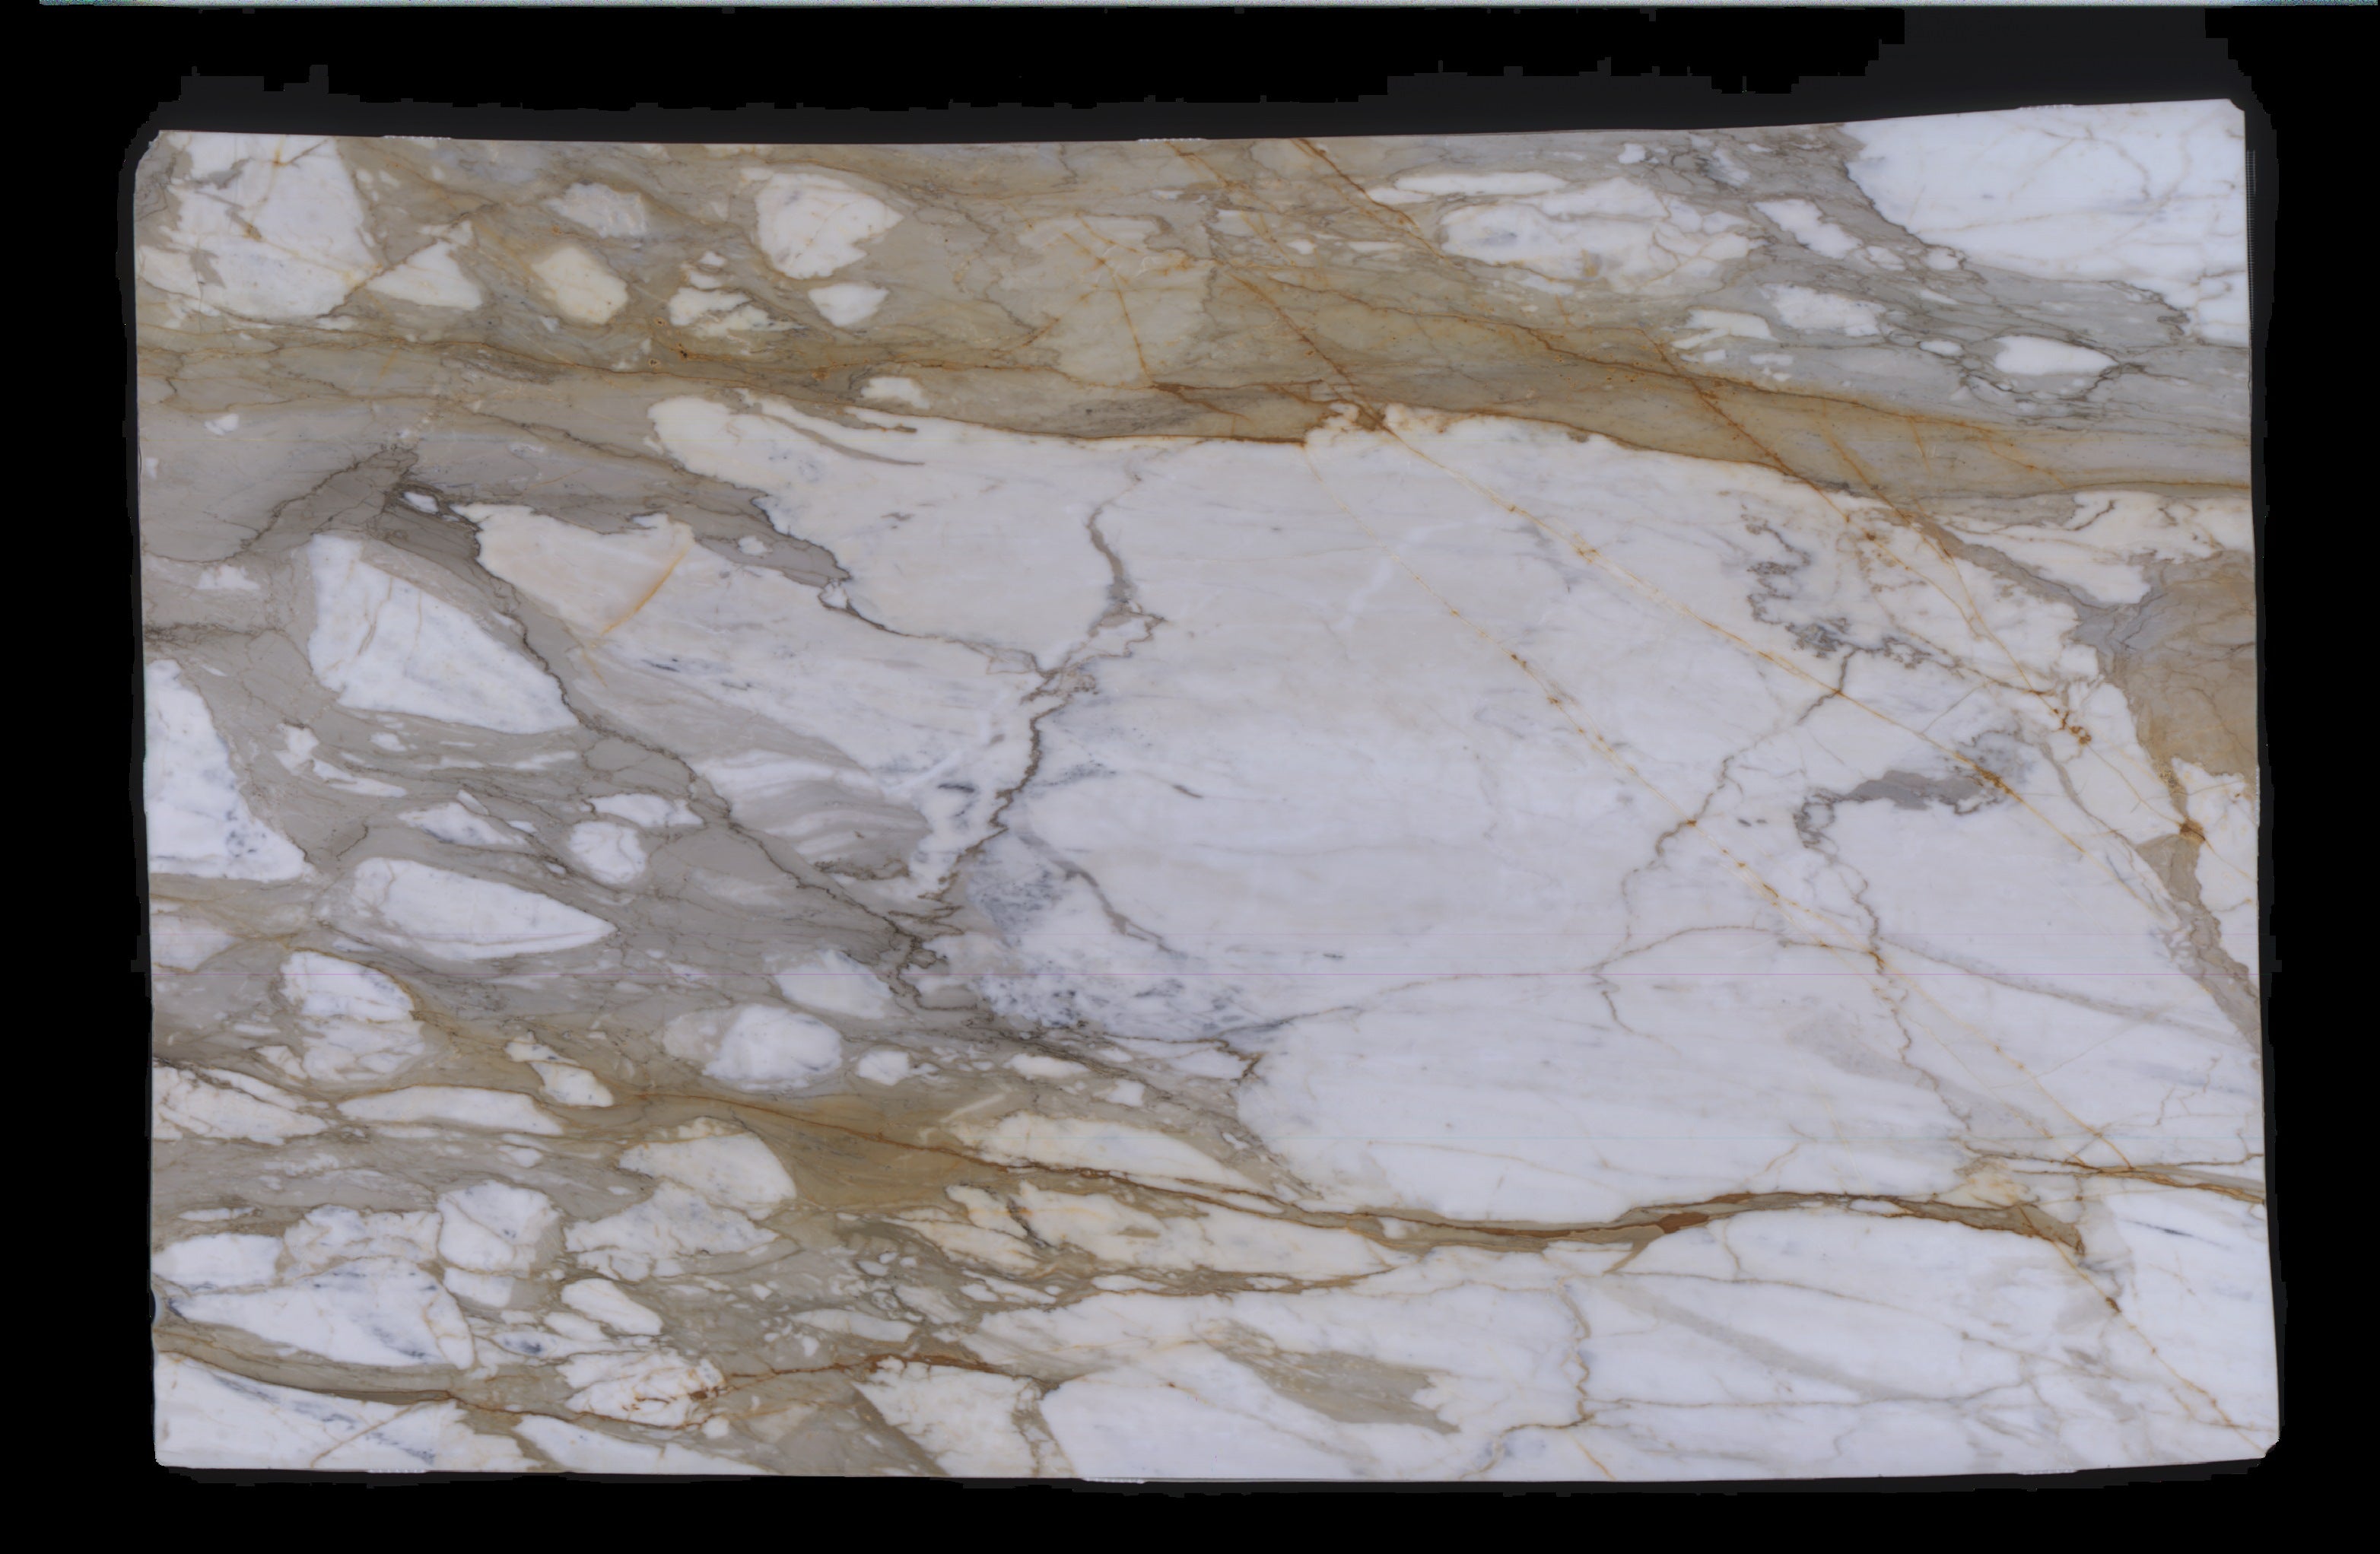  Calacatta Macchia Vecchia Marble Slab 3/4 - 953#53 -  VS 71x112 